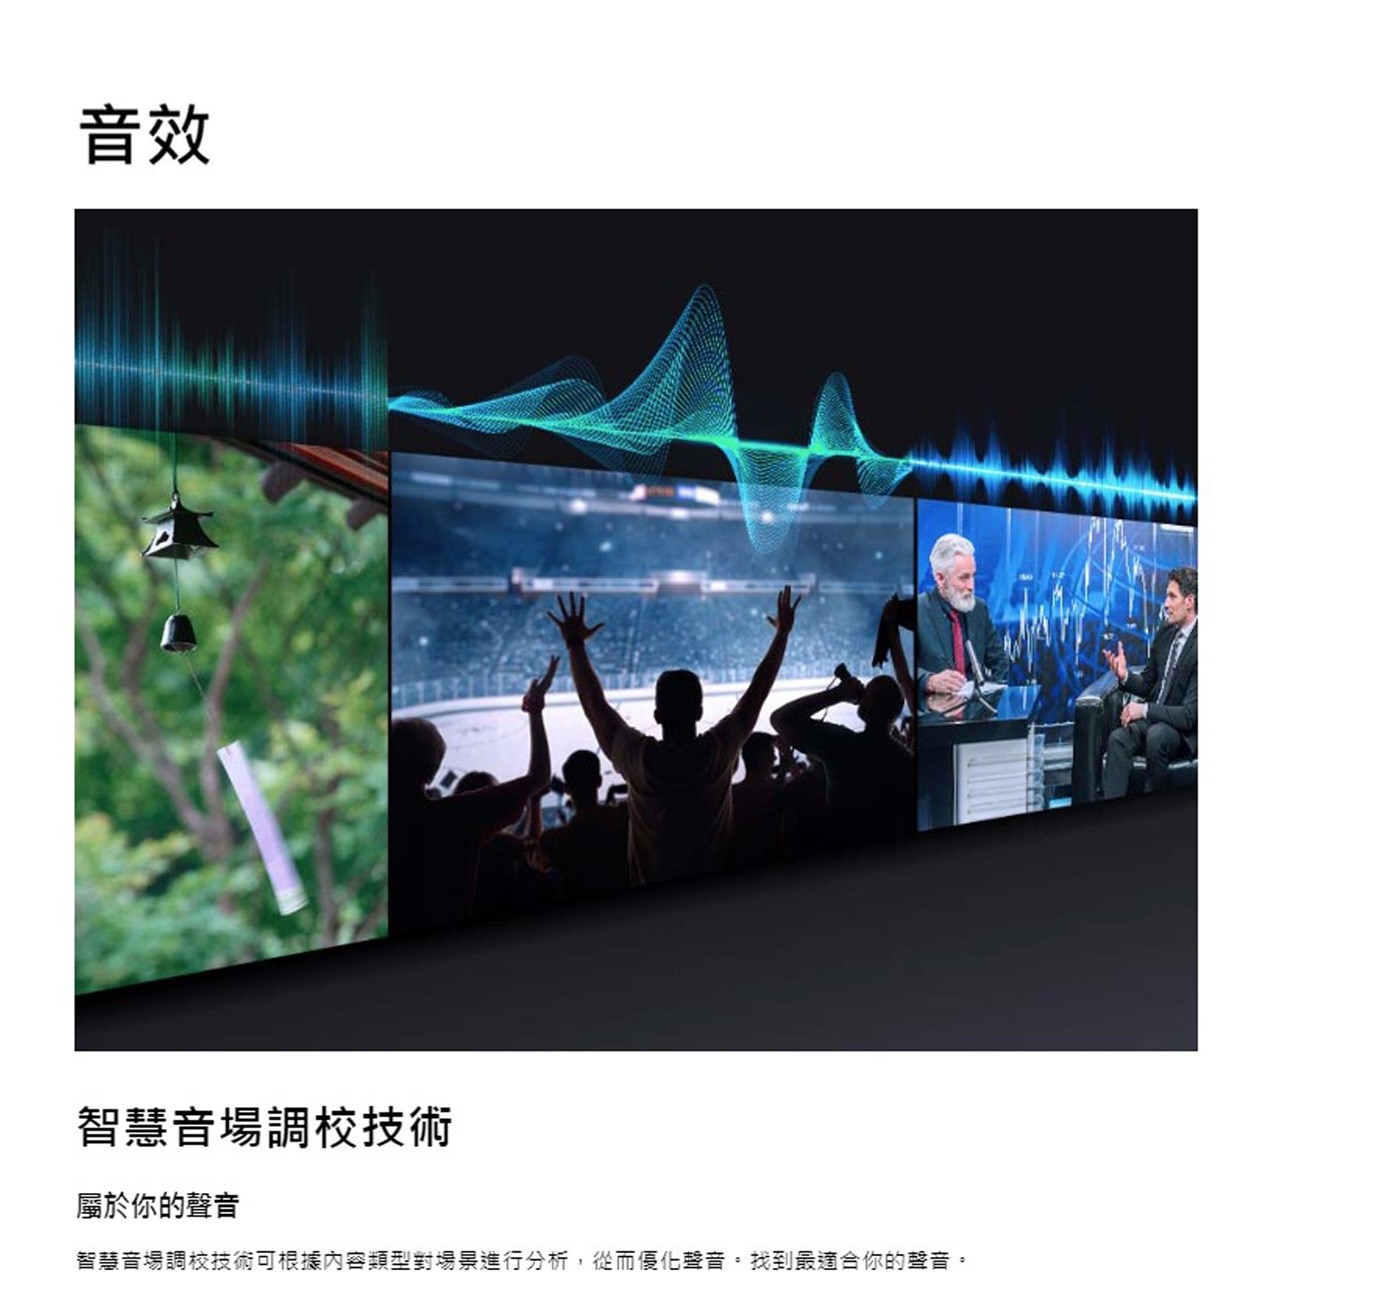 Samsung 75吋 4K UHD 電視 UA75CU8000XXZW智慧音場調校技術